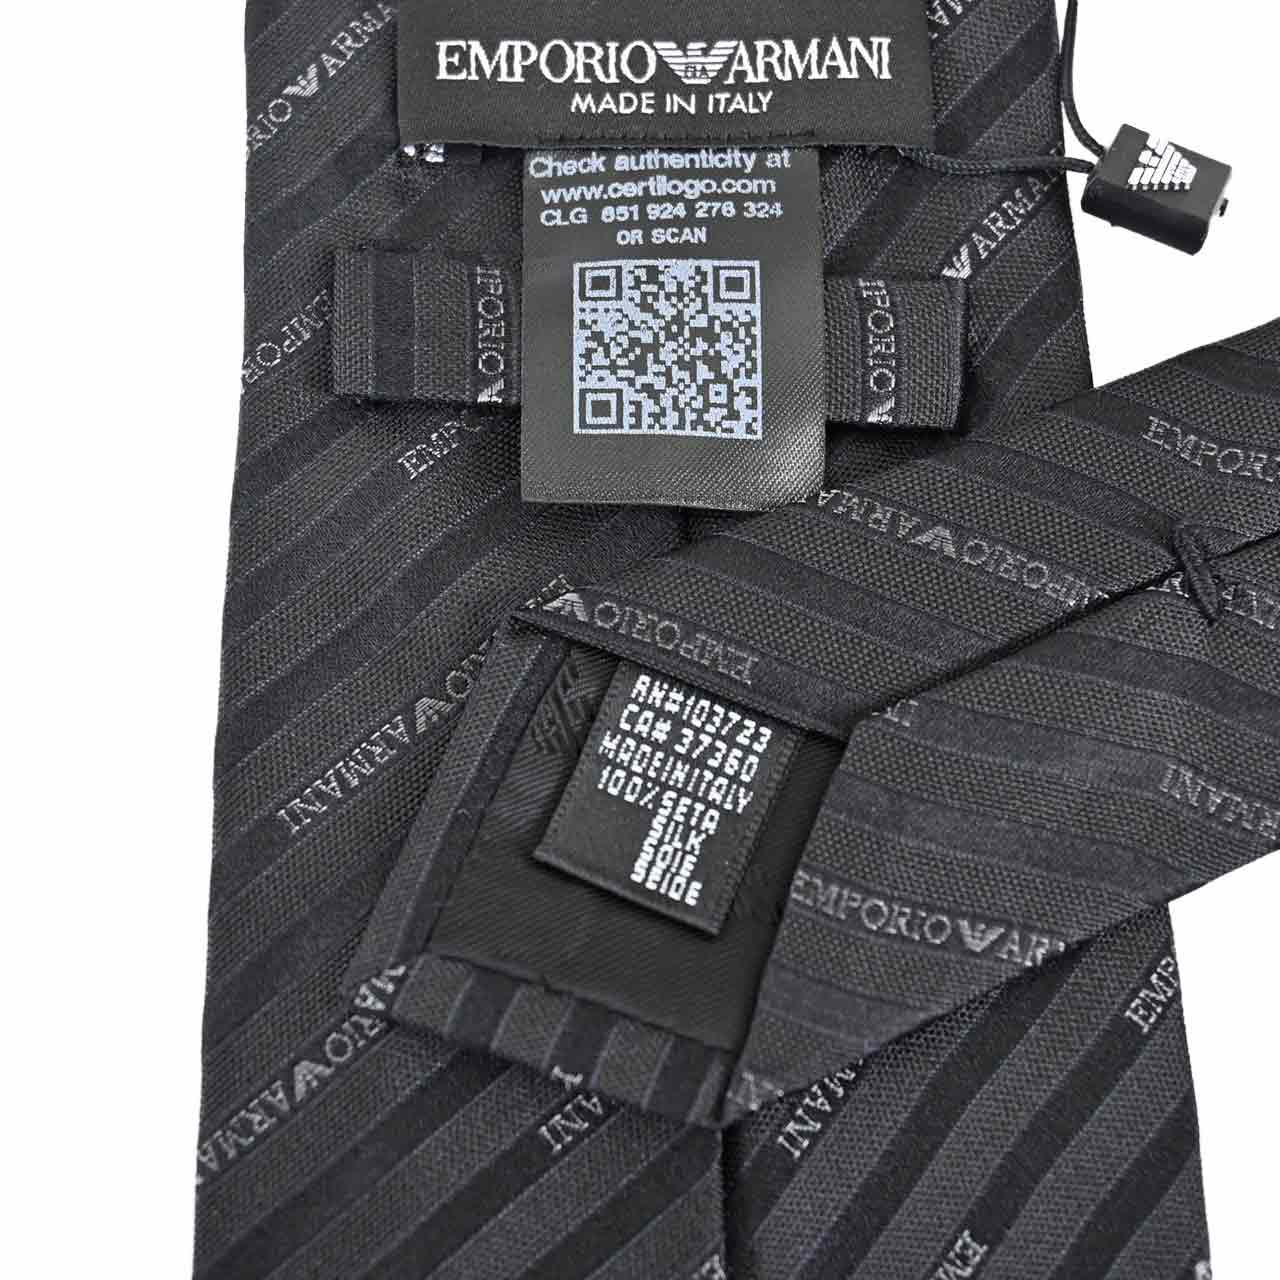 EMPORIO ARMANI エンポリオアルマーニ ネクタイ 1P605-00120 ブラック メンズ